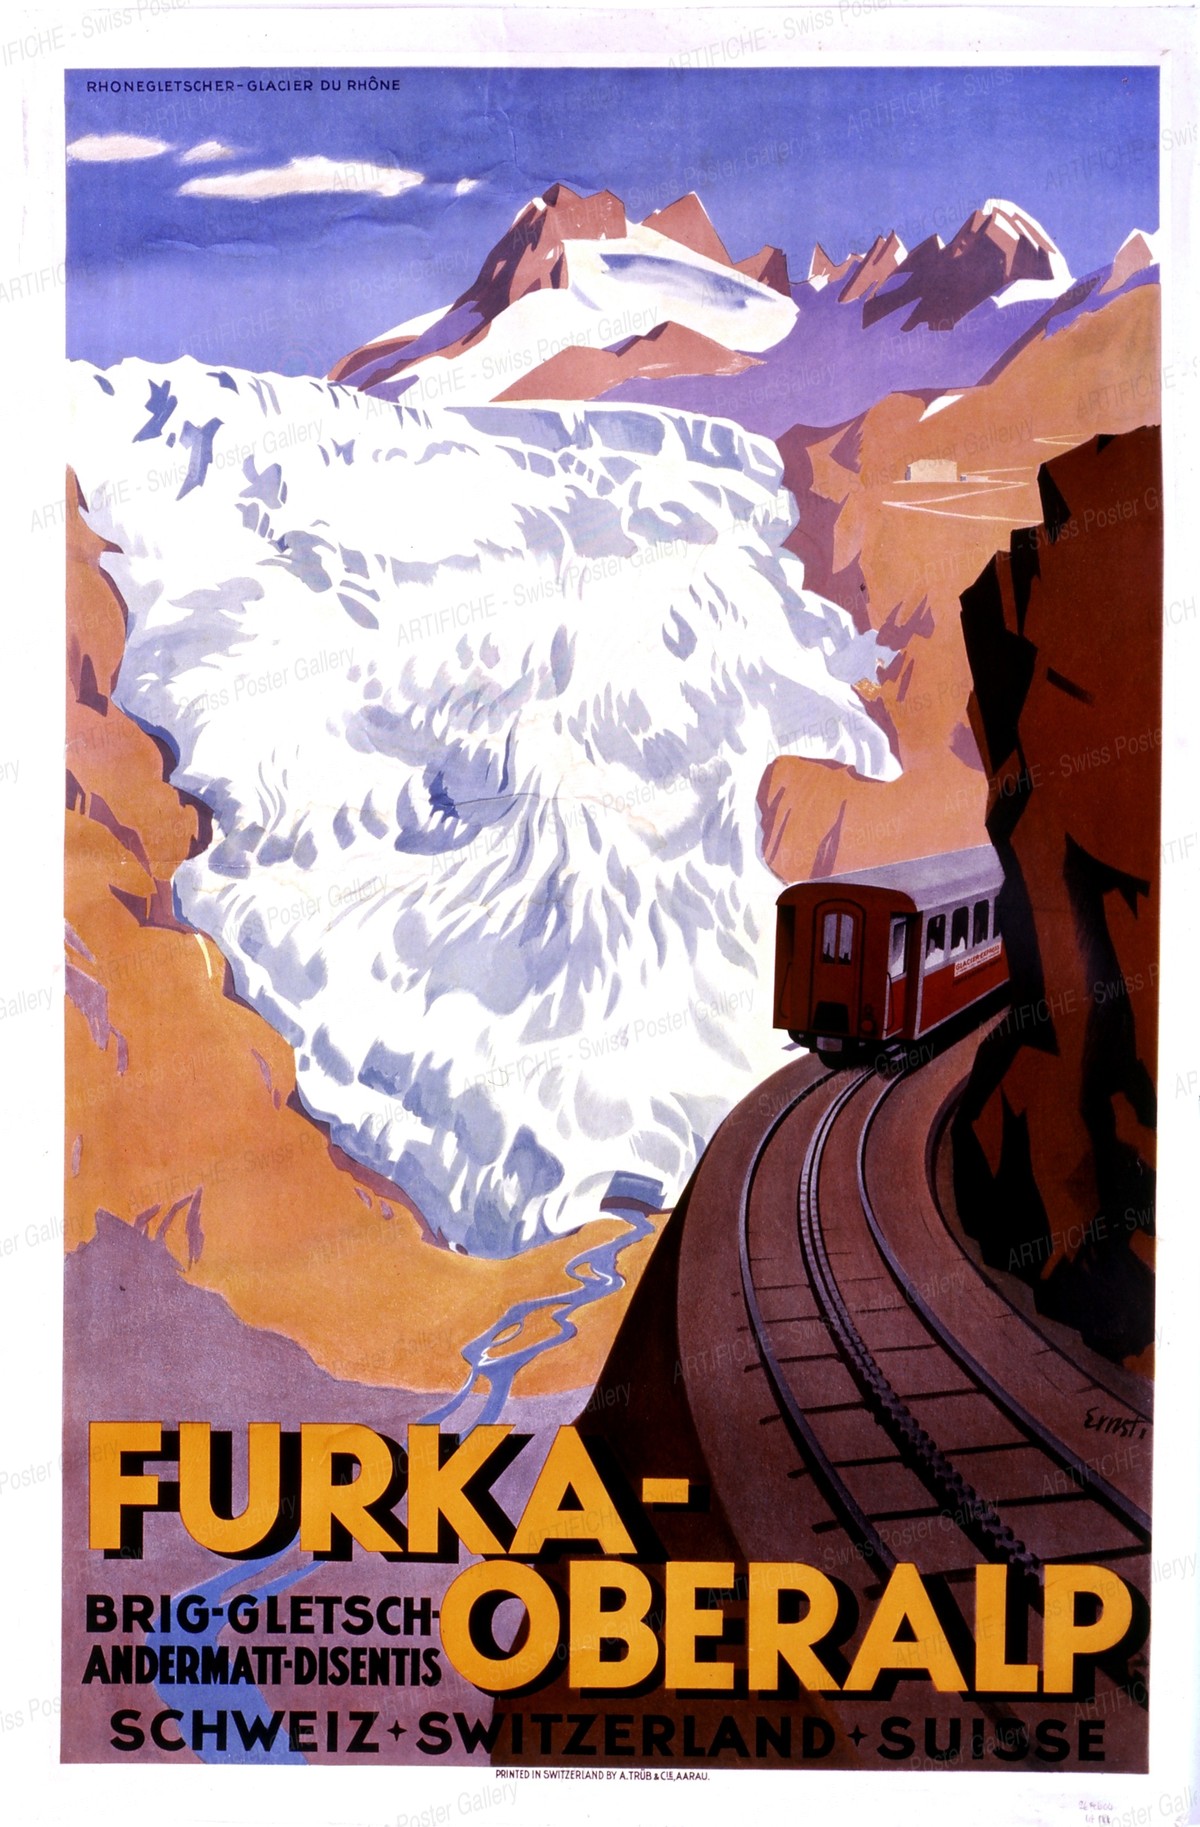 FURKA-OBERALP – Brig – Gletsch- Andermatt – Disentis – SCHWEIZ * SWITZERLAND * SUISSE, Otto Ernst